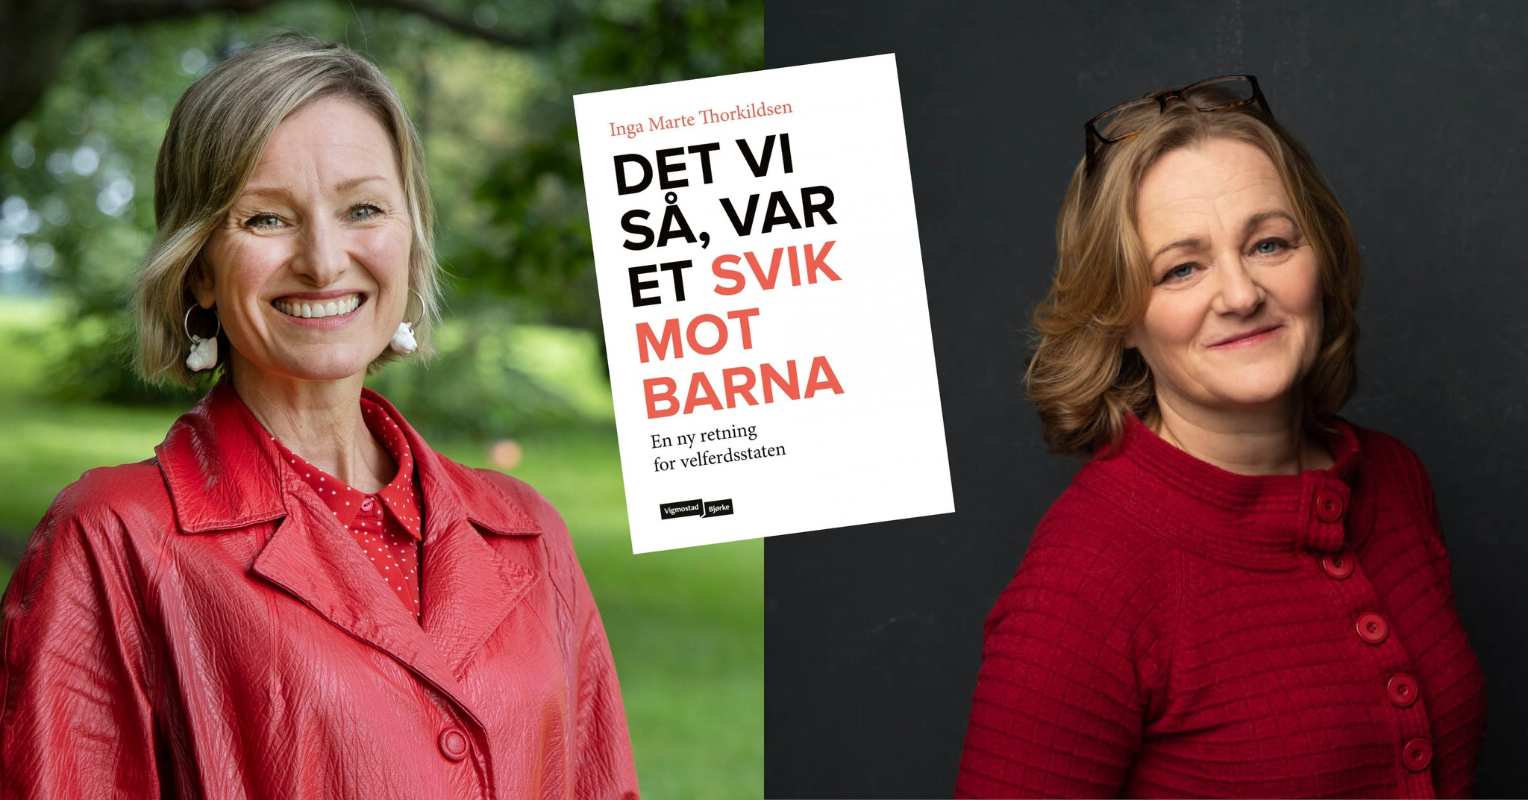 Image of Inga Marte Thorkildsen and Katrin Glatz Brubakk and the book DET VI SẢ, VAR ET SVIK MOT BARNA En retning for velferdsstaten